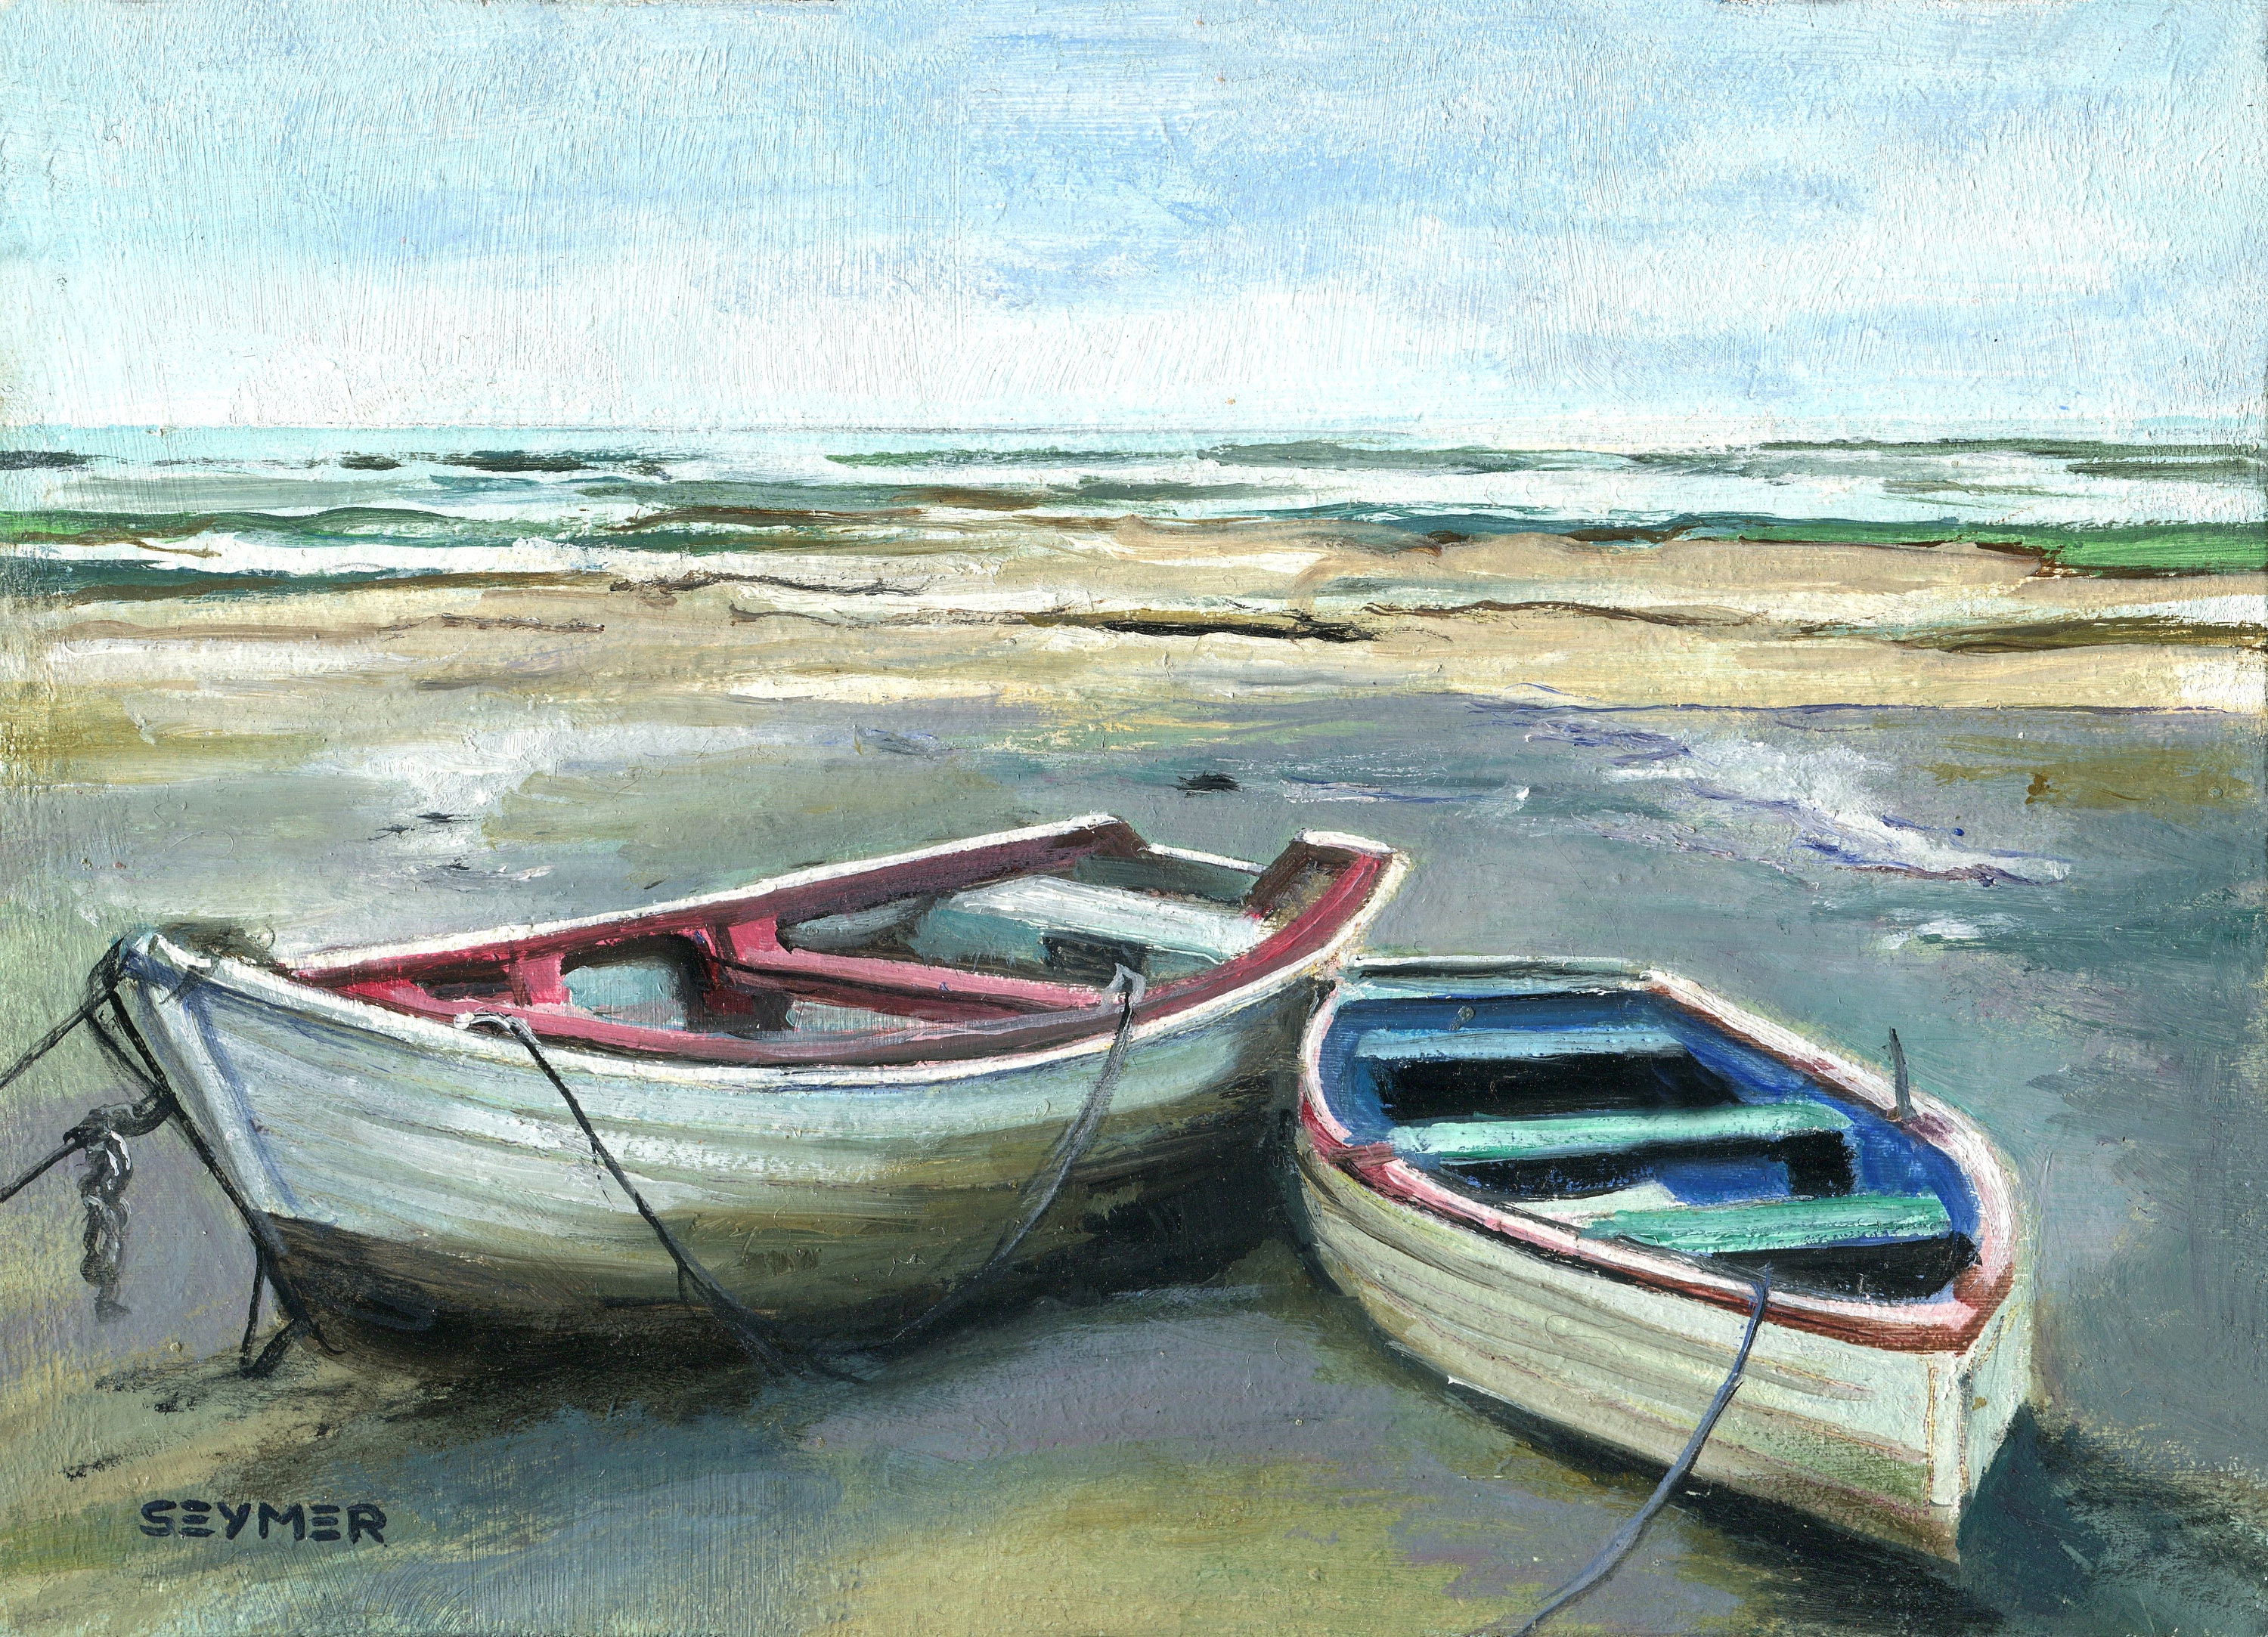 Buy Original Coastal Art Online In India -  India